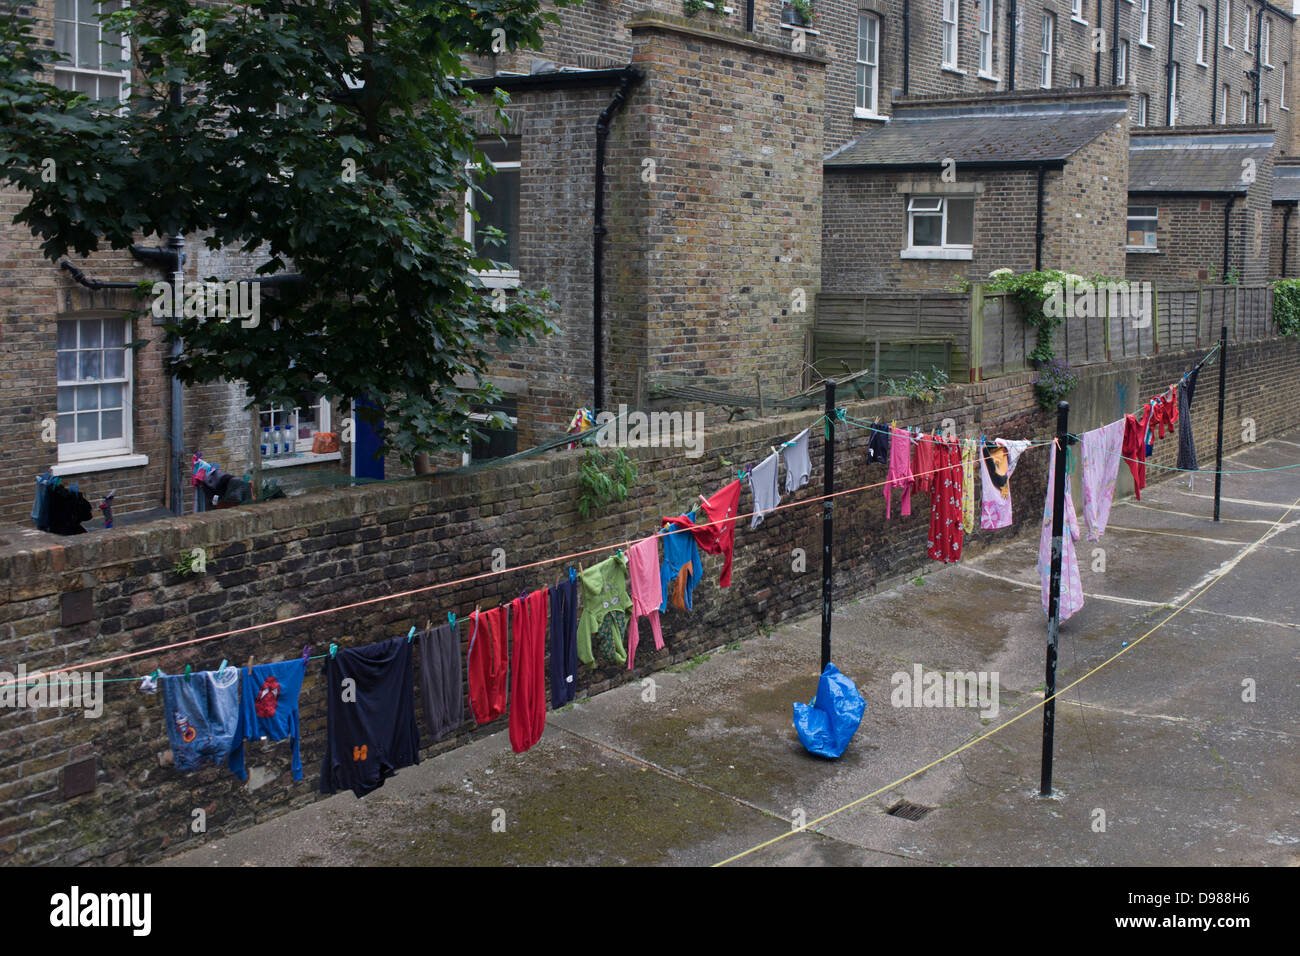 Laver les vêtements accrochés sur une ligne dans un lotissement de Pimlico, à Londres. Ce qui reflète une époque révolue où les résidents d'immeubles du centre-ville et des quartiers d'habitations accrochées à leur lavage Lavage sur jours (habituellement du lundi au Royaume-Uni), s'appuyant sur l'honnêteté et l'esprit communautaire pour assurer leur sécurité. Nous voyons aujourd'hui c'est rarement en dehors des cours comme celui-ci dans l'ouest de Londres. Les murs sont en briques fromclassic bourse de Londres mais les couleurs d'un secteur dynamique de la Grande-Bretagne du 21e siècle sont vus enfilés le long de la ligne. Banque D'Images